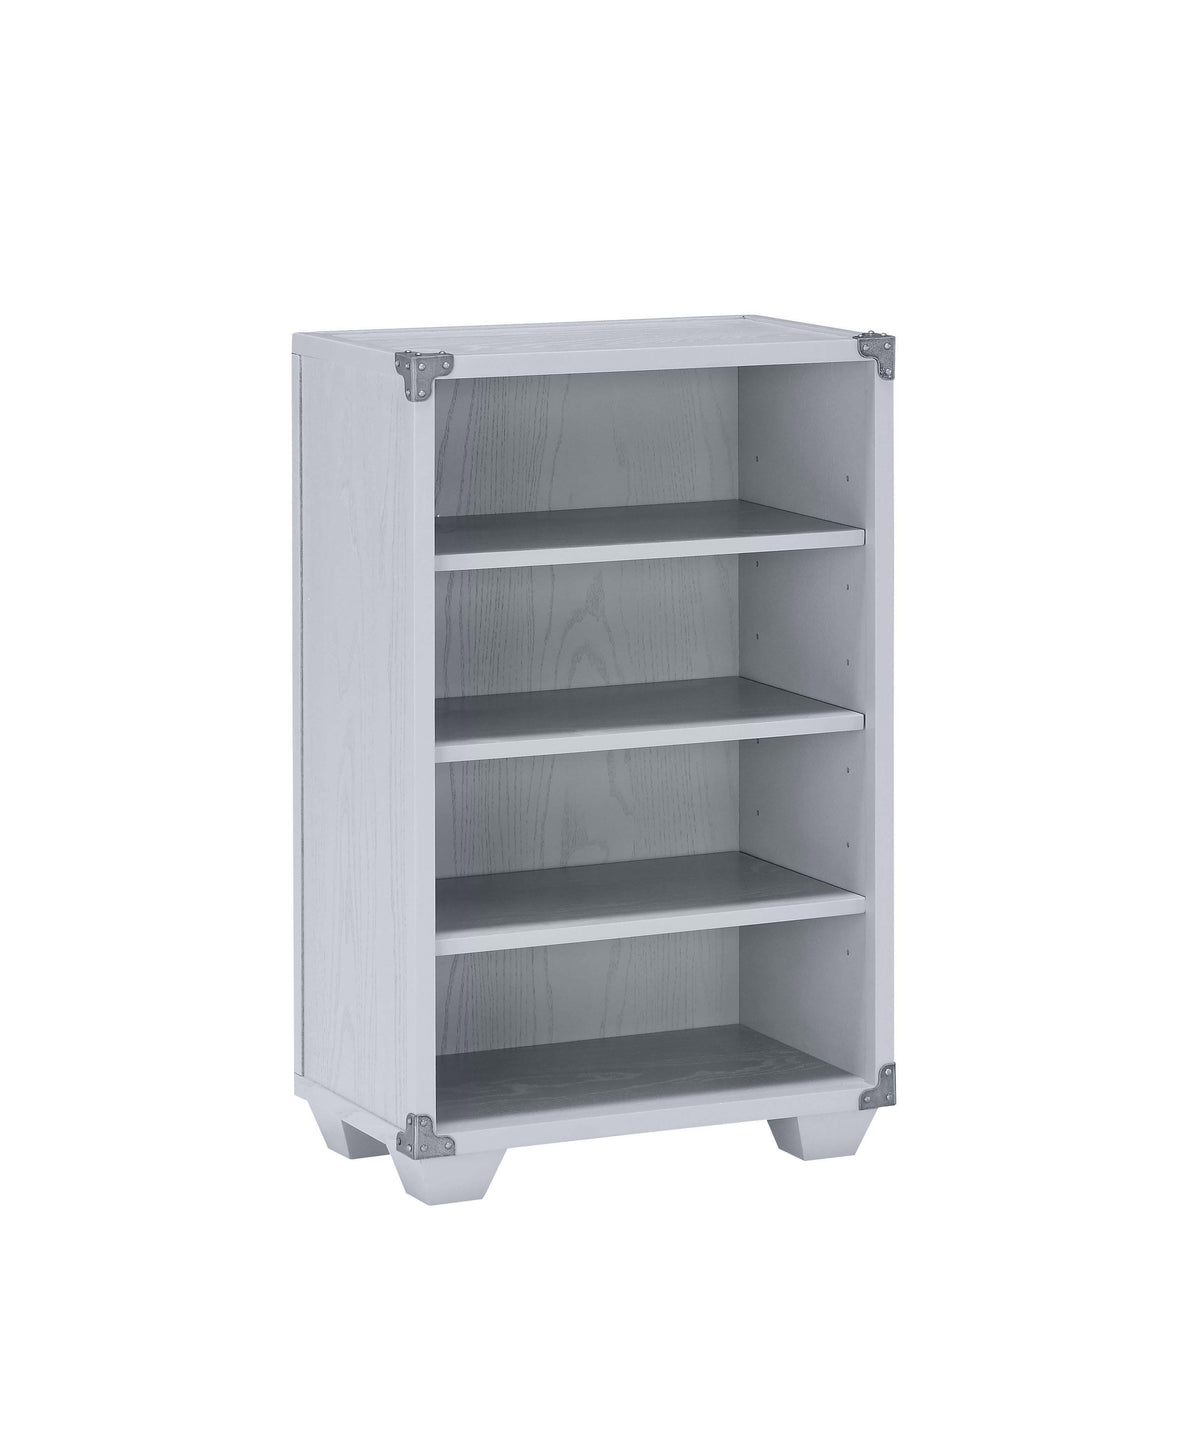 Orchest Gray Bookcase  Half Price Furniture